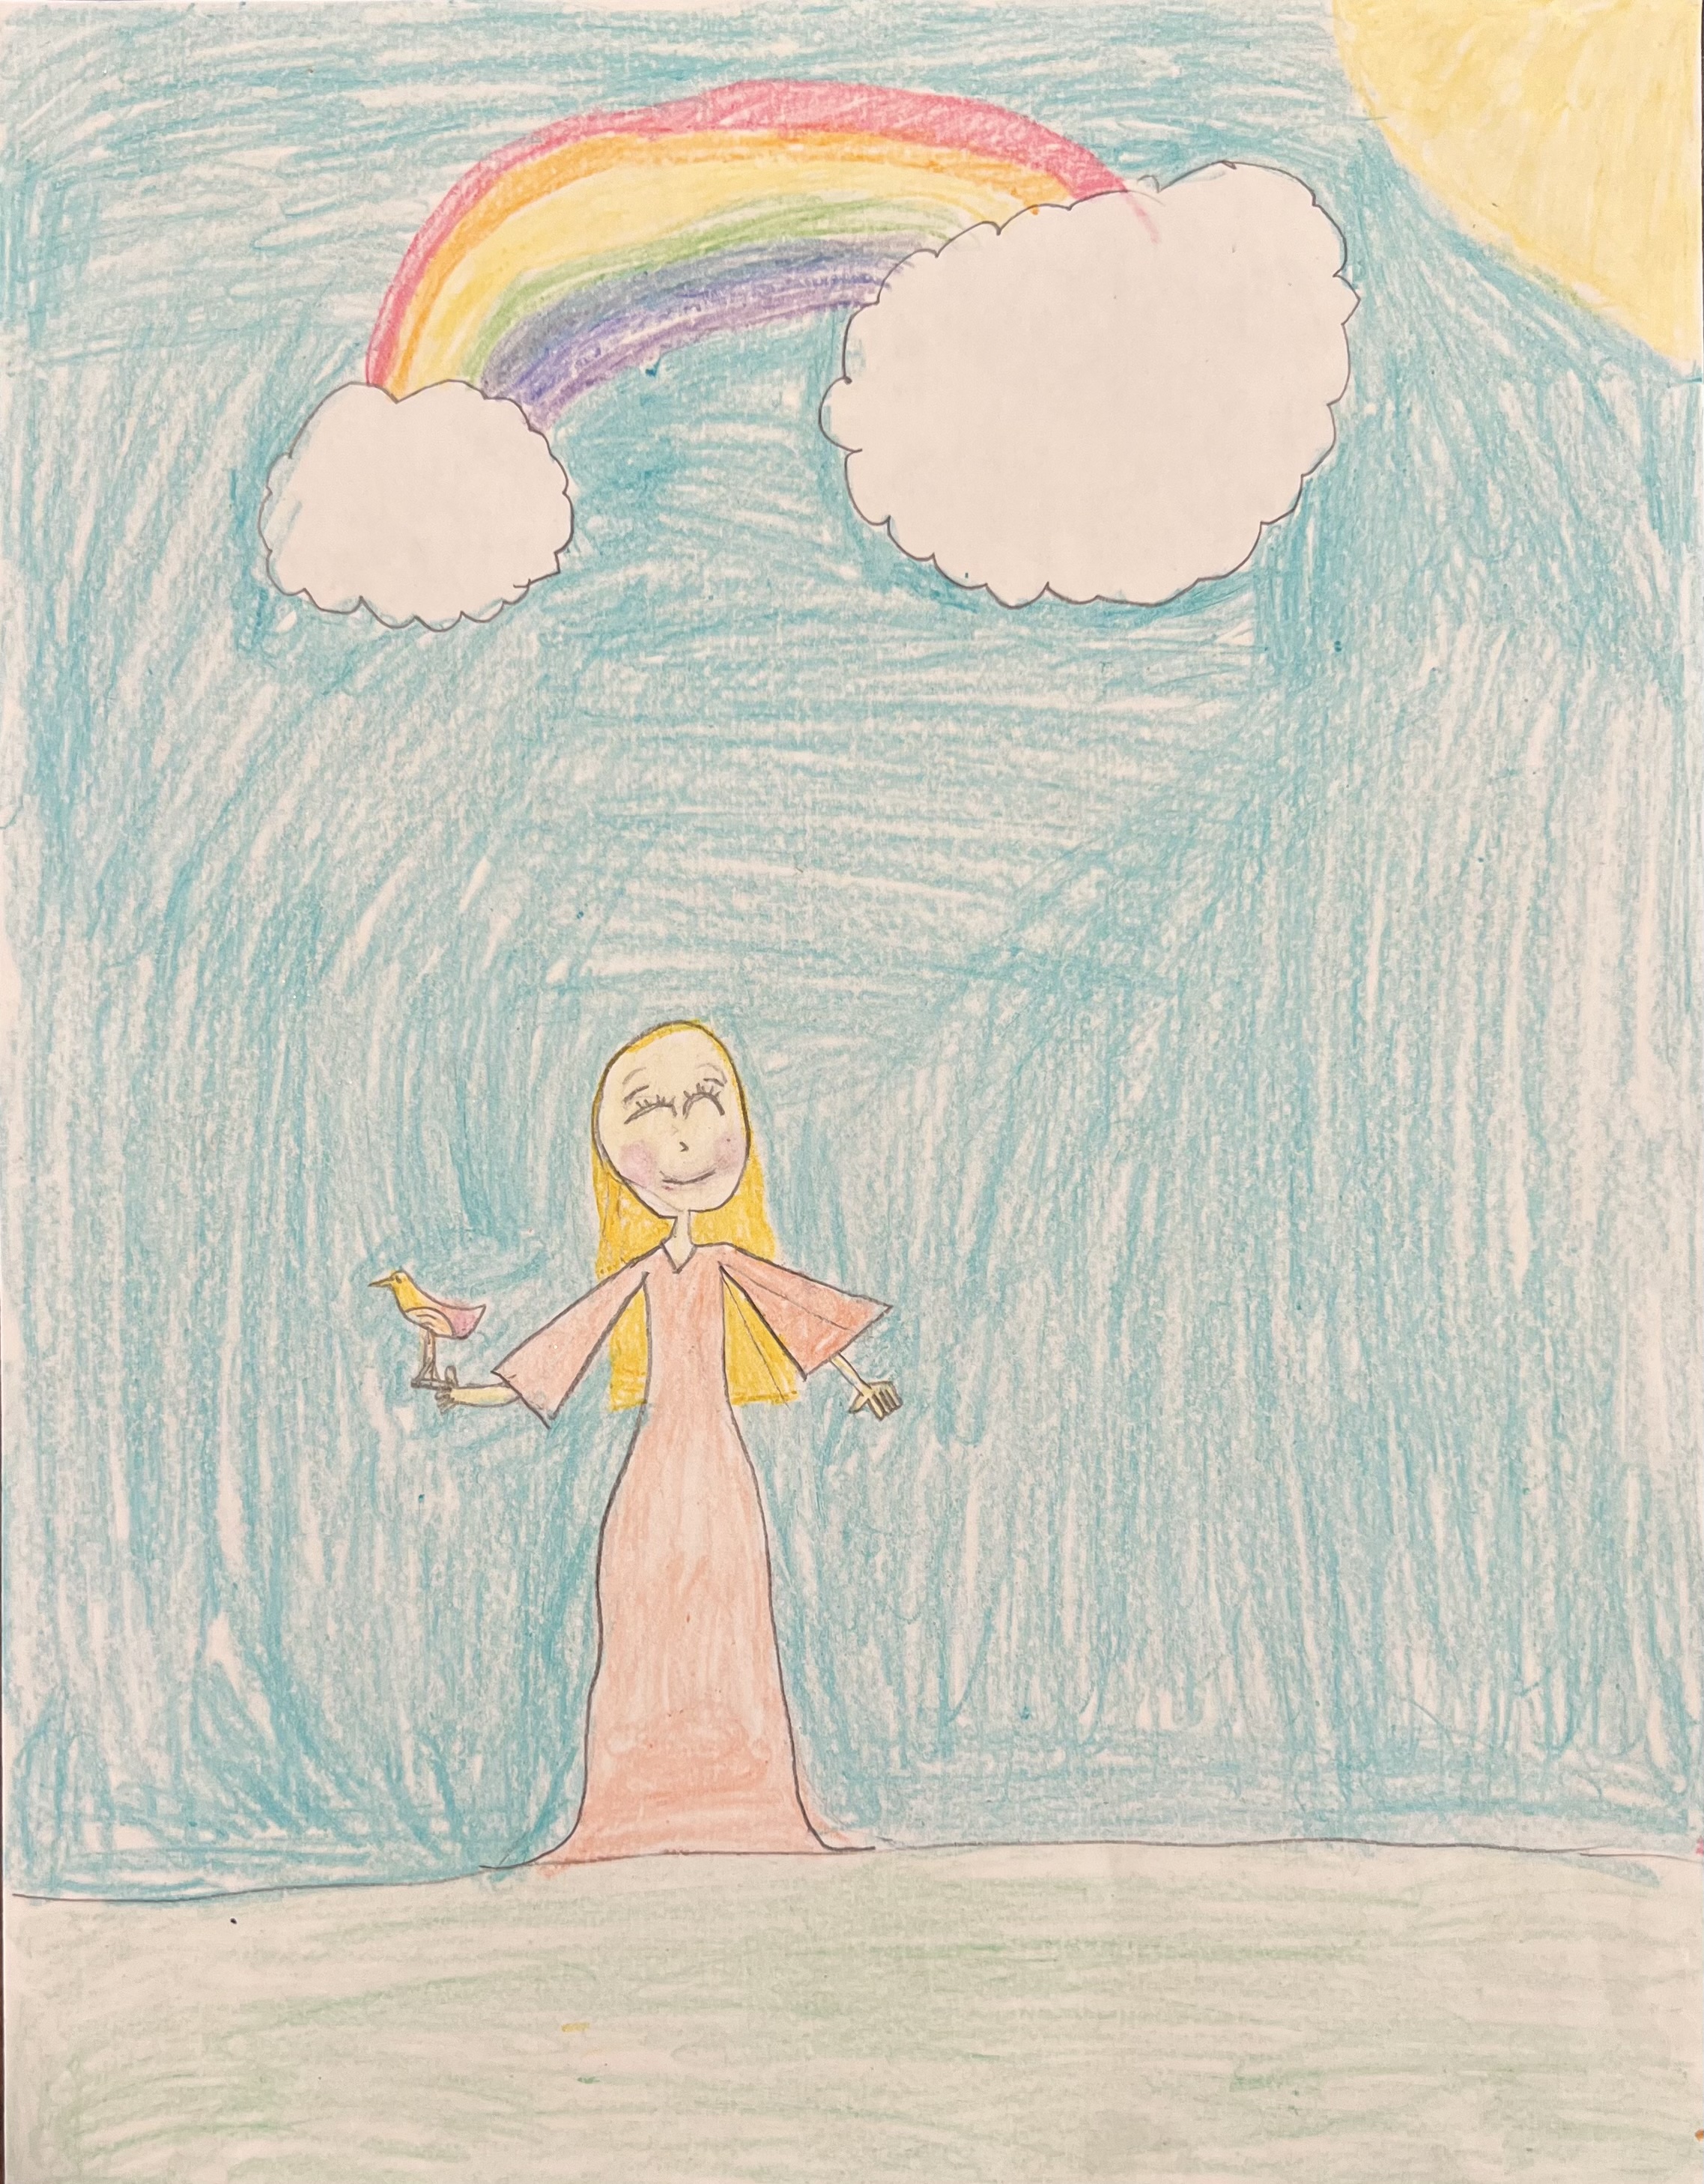 Girl With a Bird Under a Rainbow